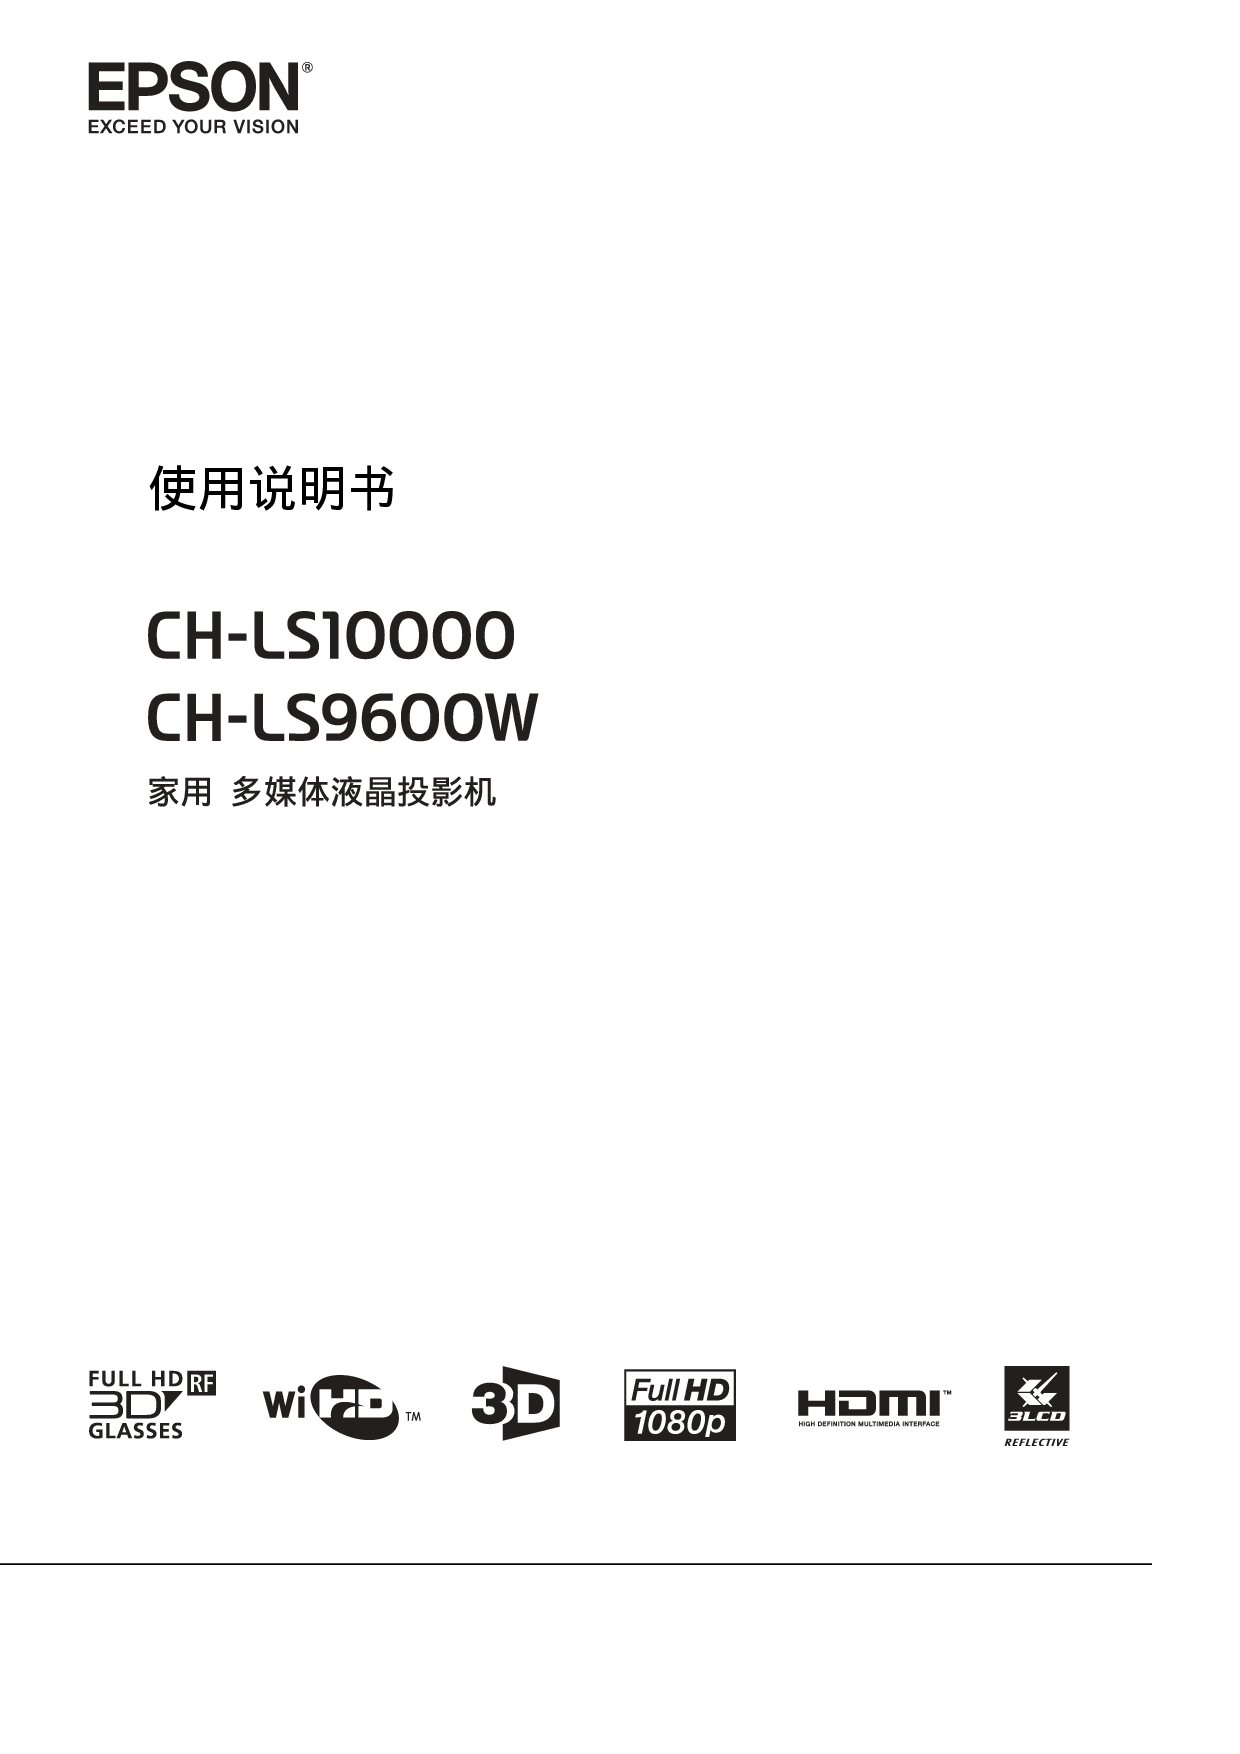 爱普生 Epson CH-LS10000 使用说明书 封面